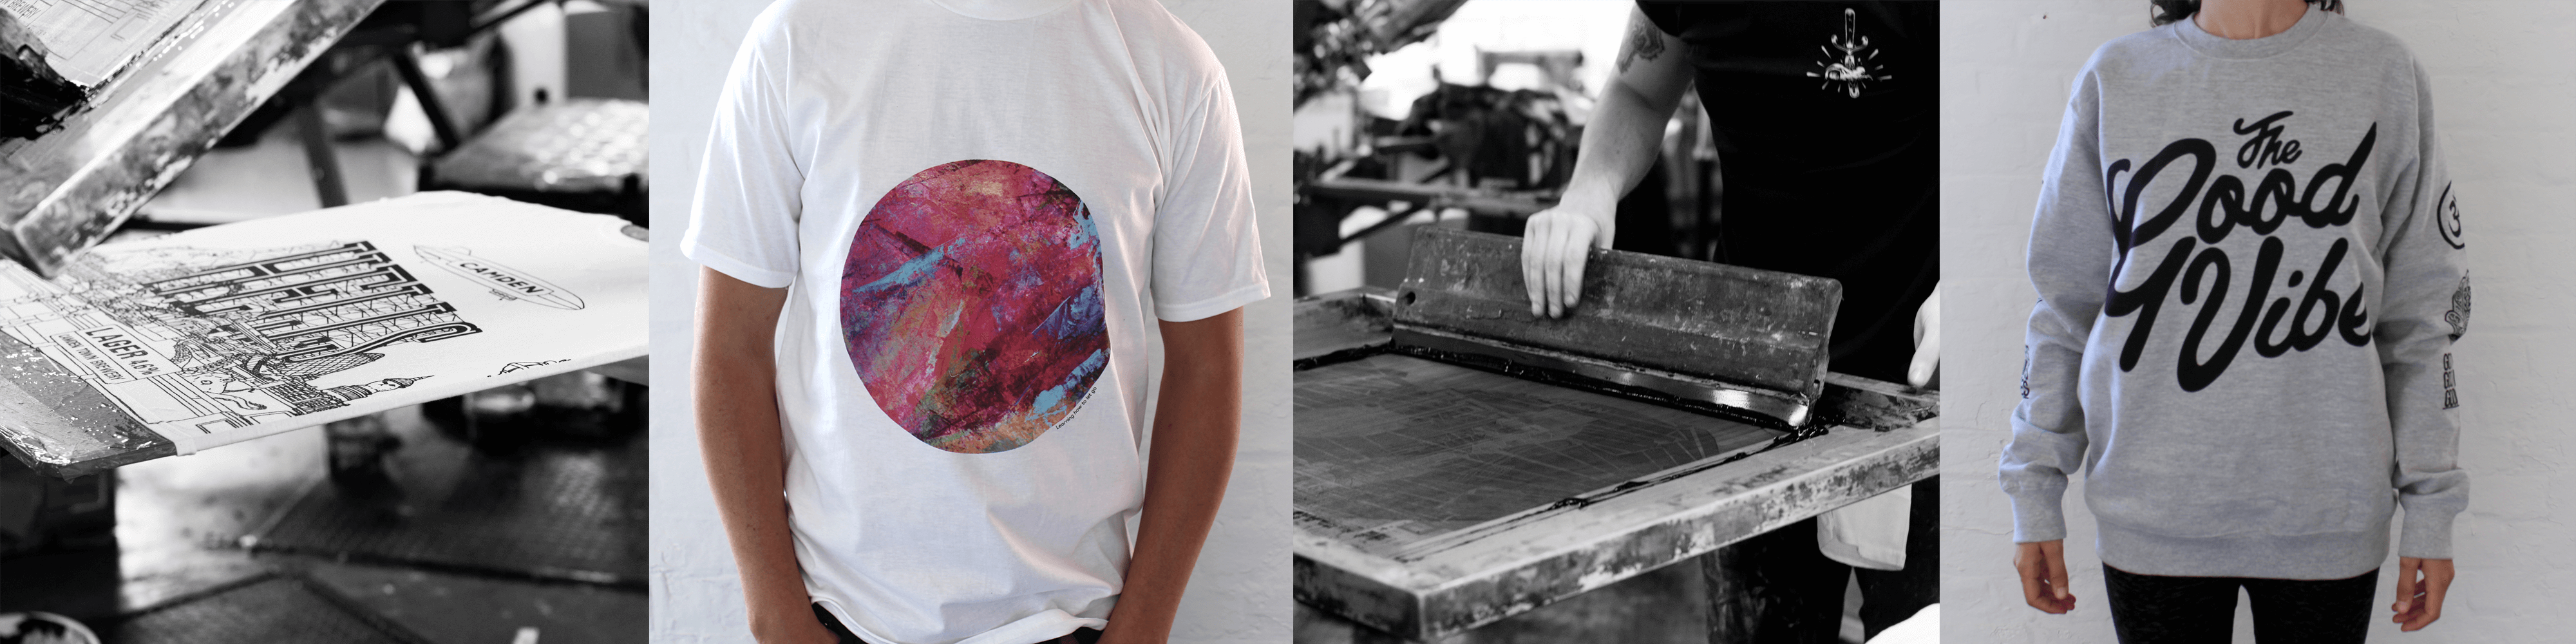 T-shirt Printing London